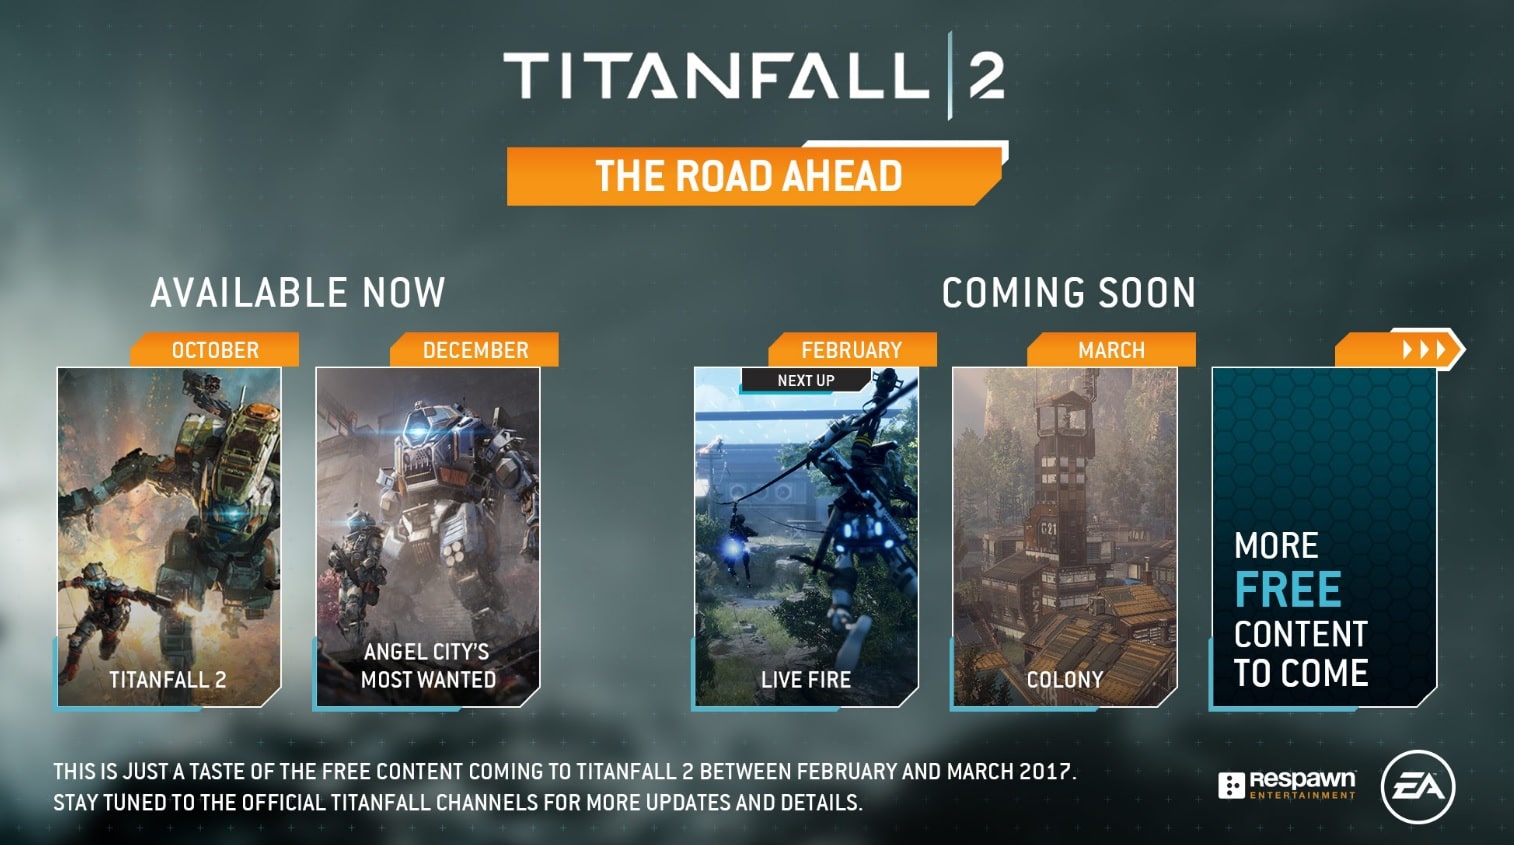 เราจะทำตามสัญญา Titanfall 2 เผย DLC ฟรีที่จะอัพเดตนเดือน ก.พ. – มี.ค. นี้